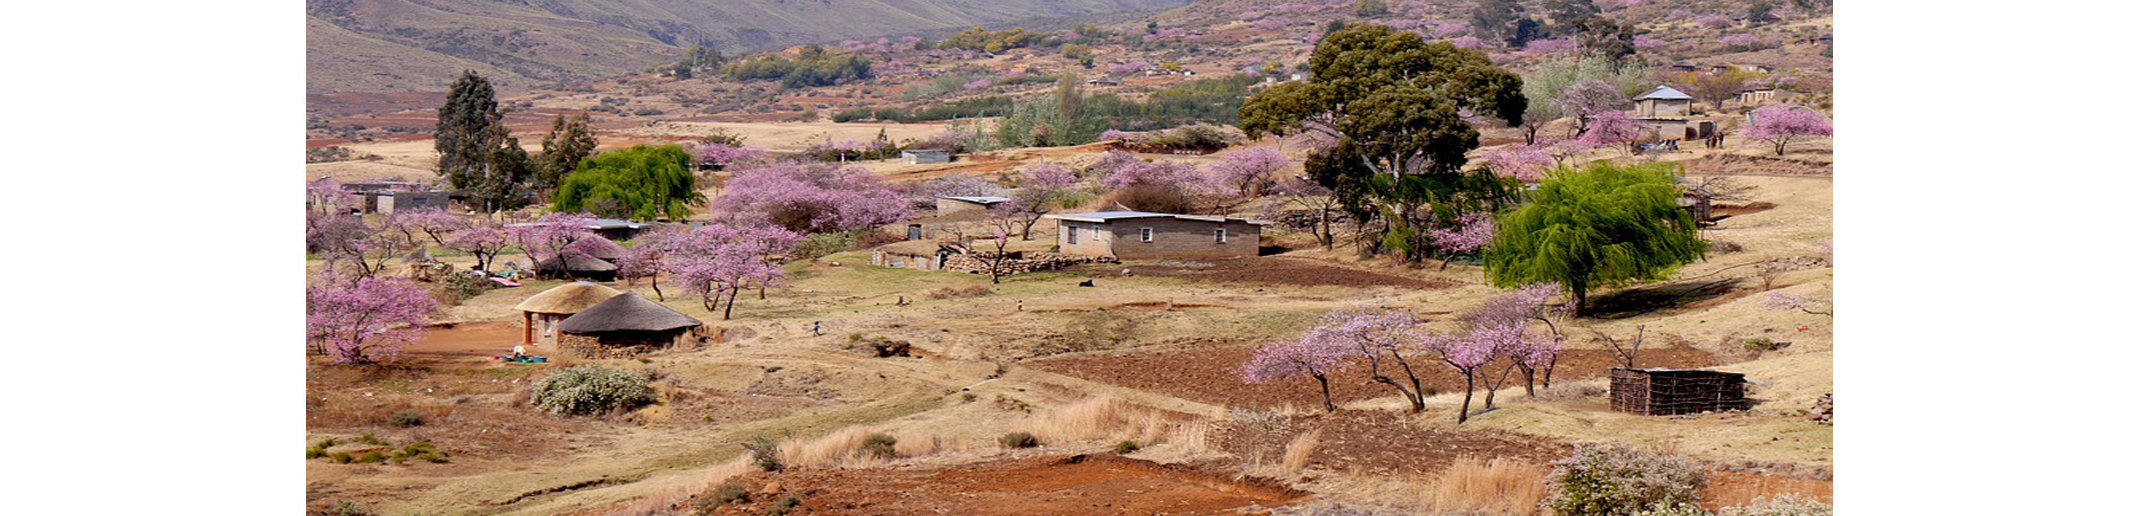 Le Lesotho bénéficie de l’initiative de suspension du service de la dette